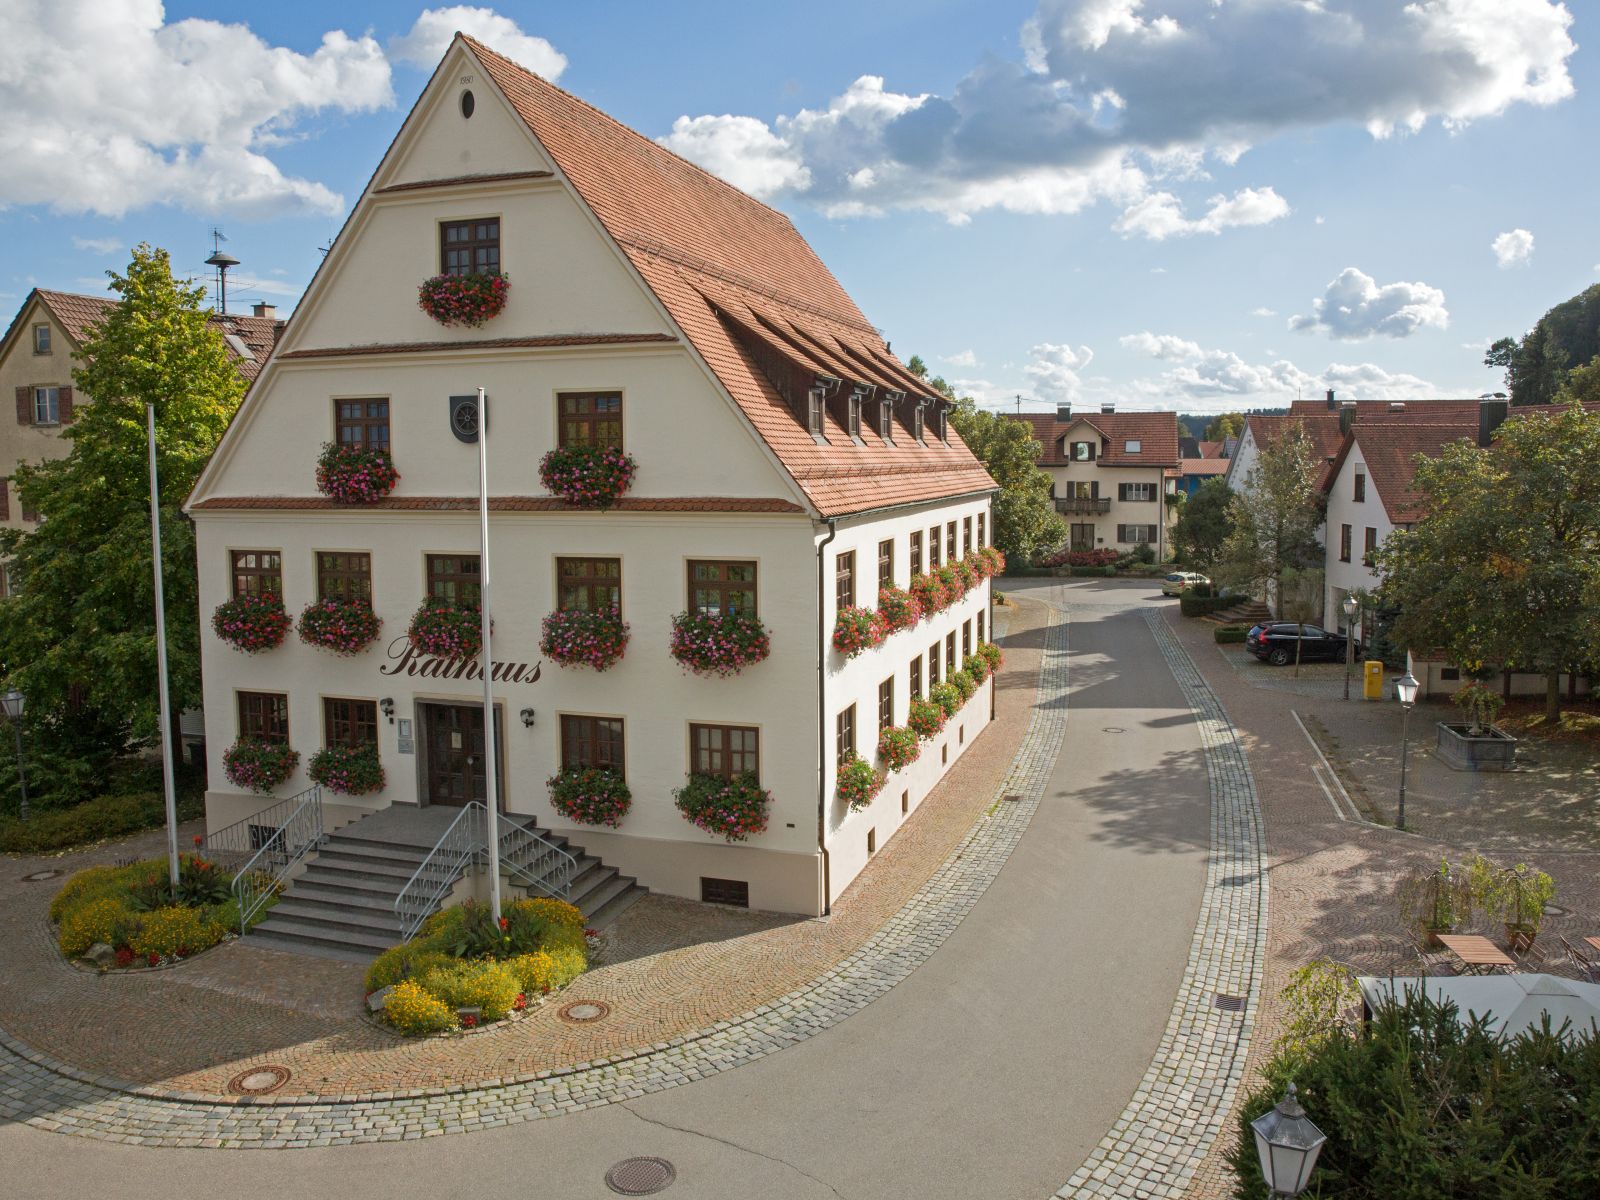 Rathaus in Erolzheim